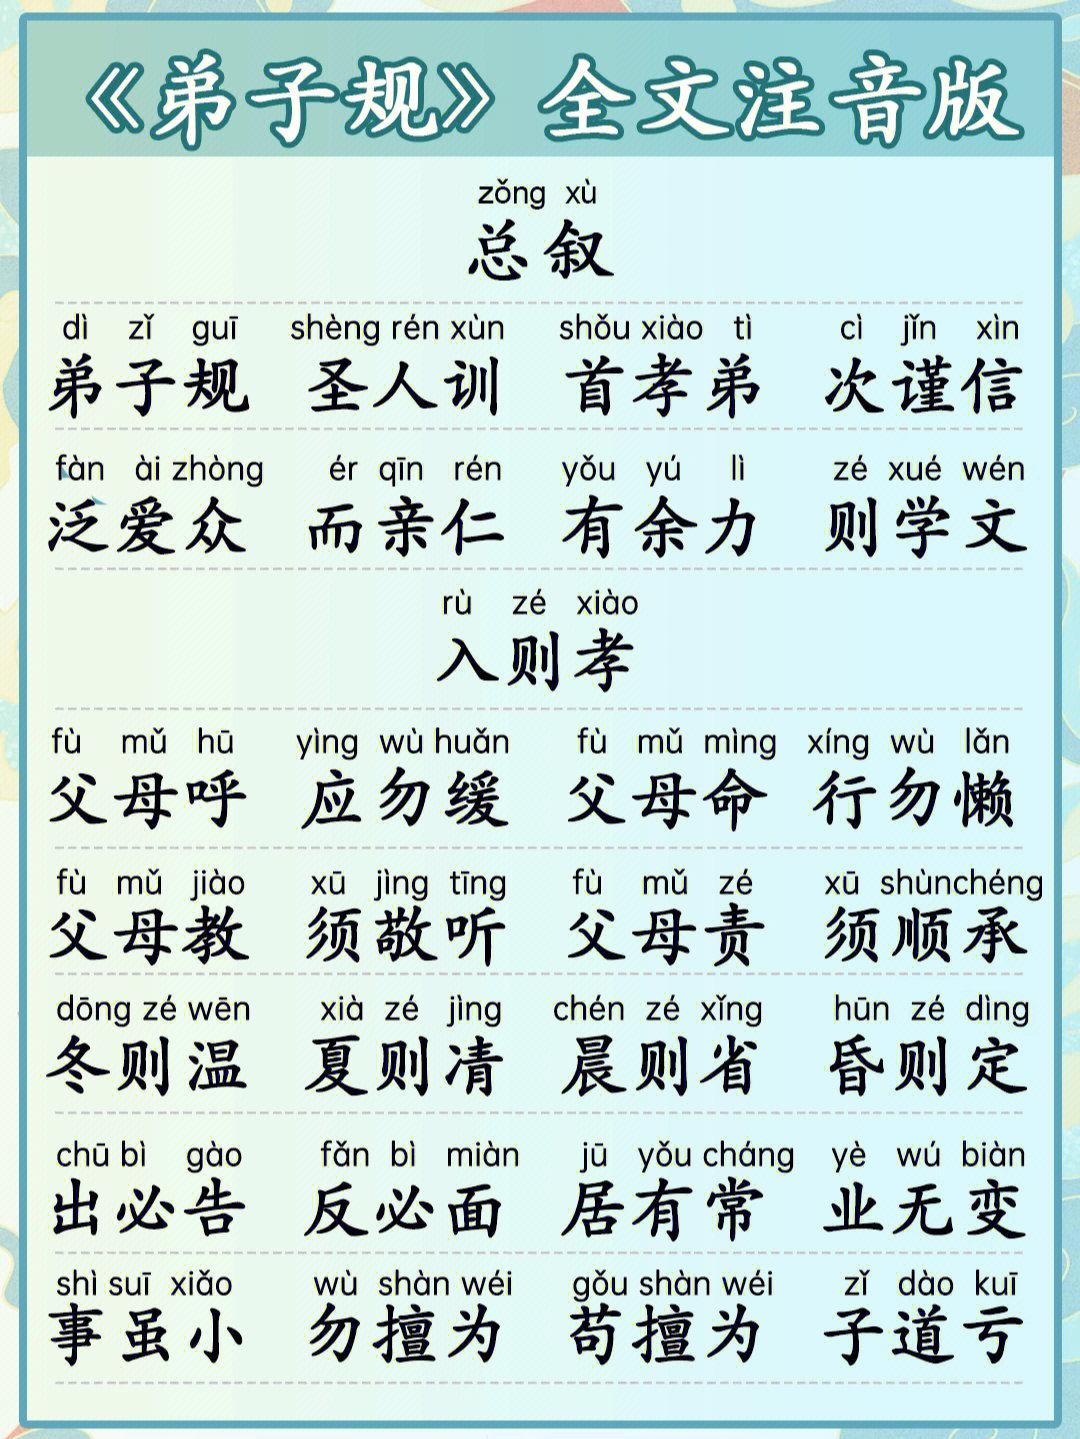 国学启蒙71弟子规全文拼音版可打印